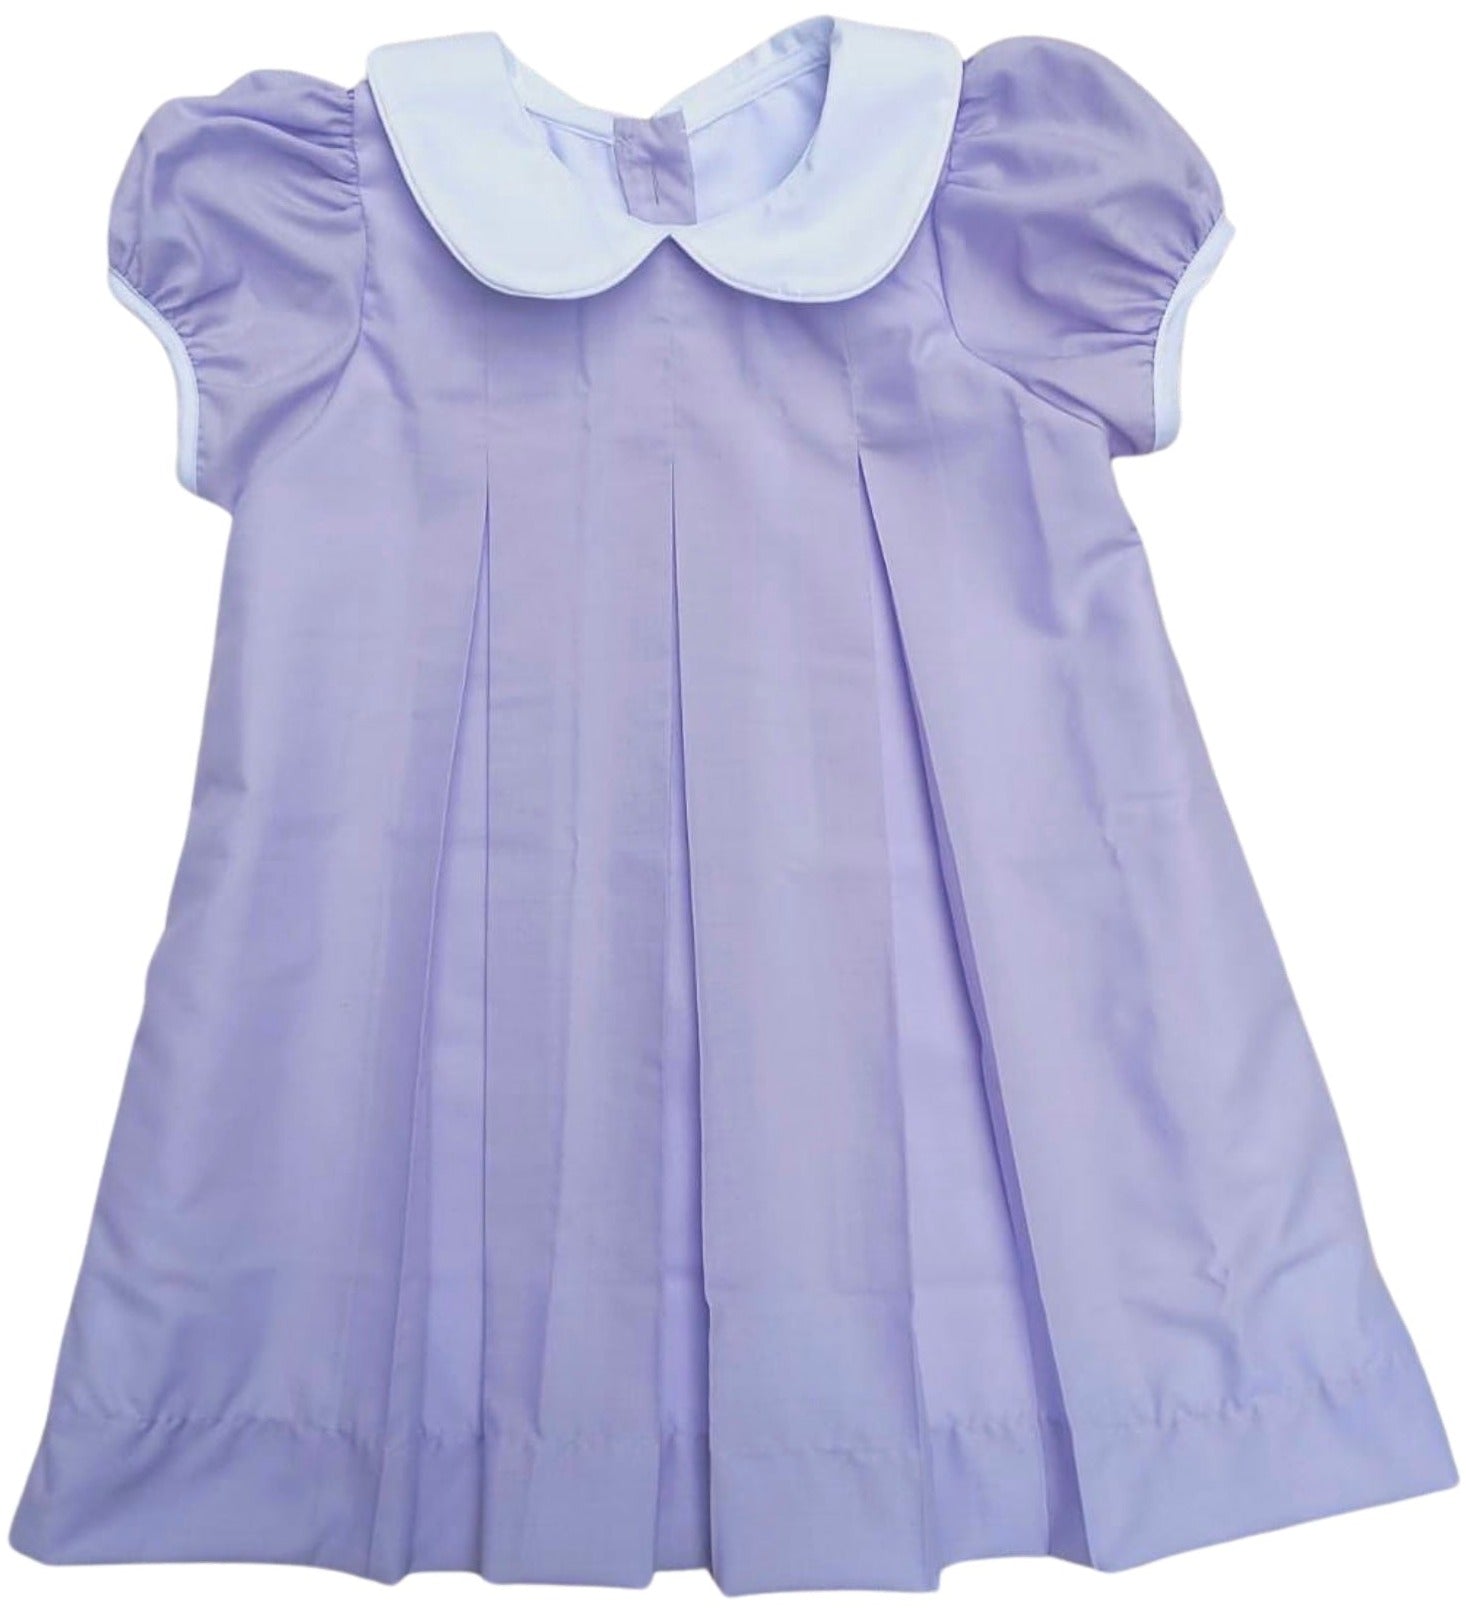 Magnolia Steel Lavender Pleat Dress